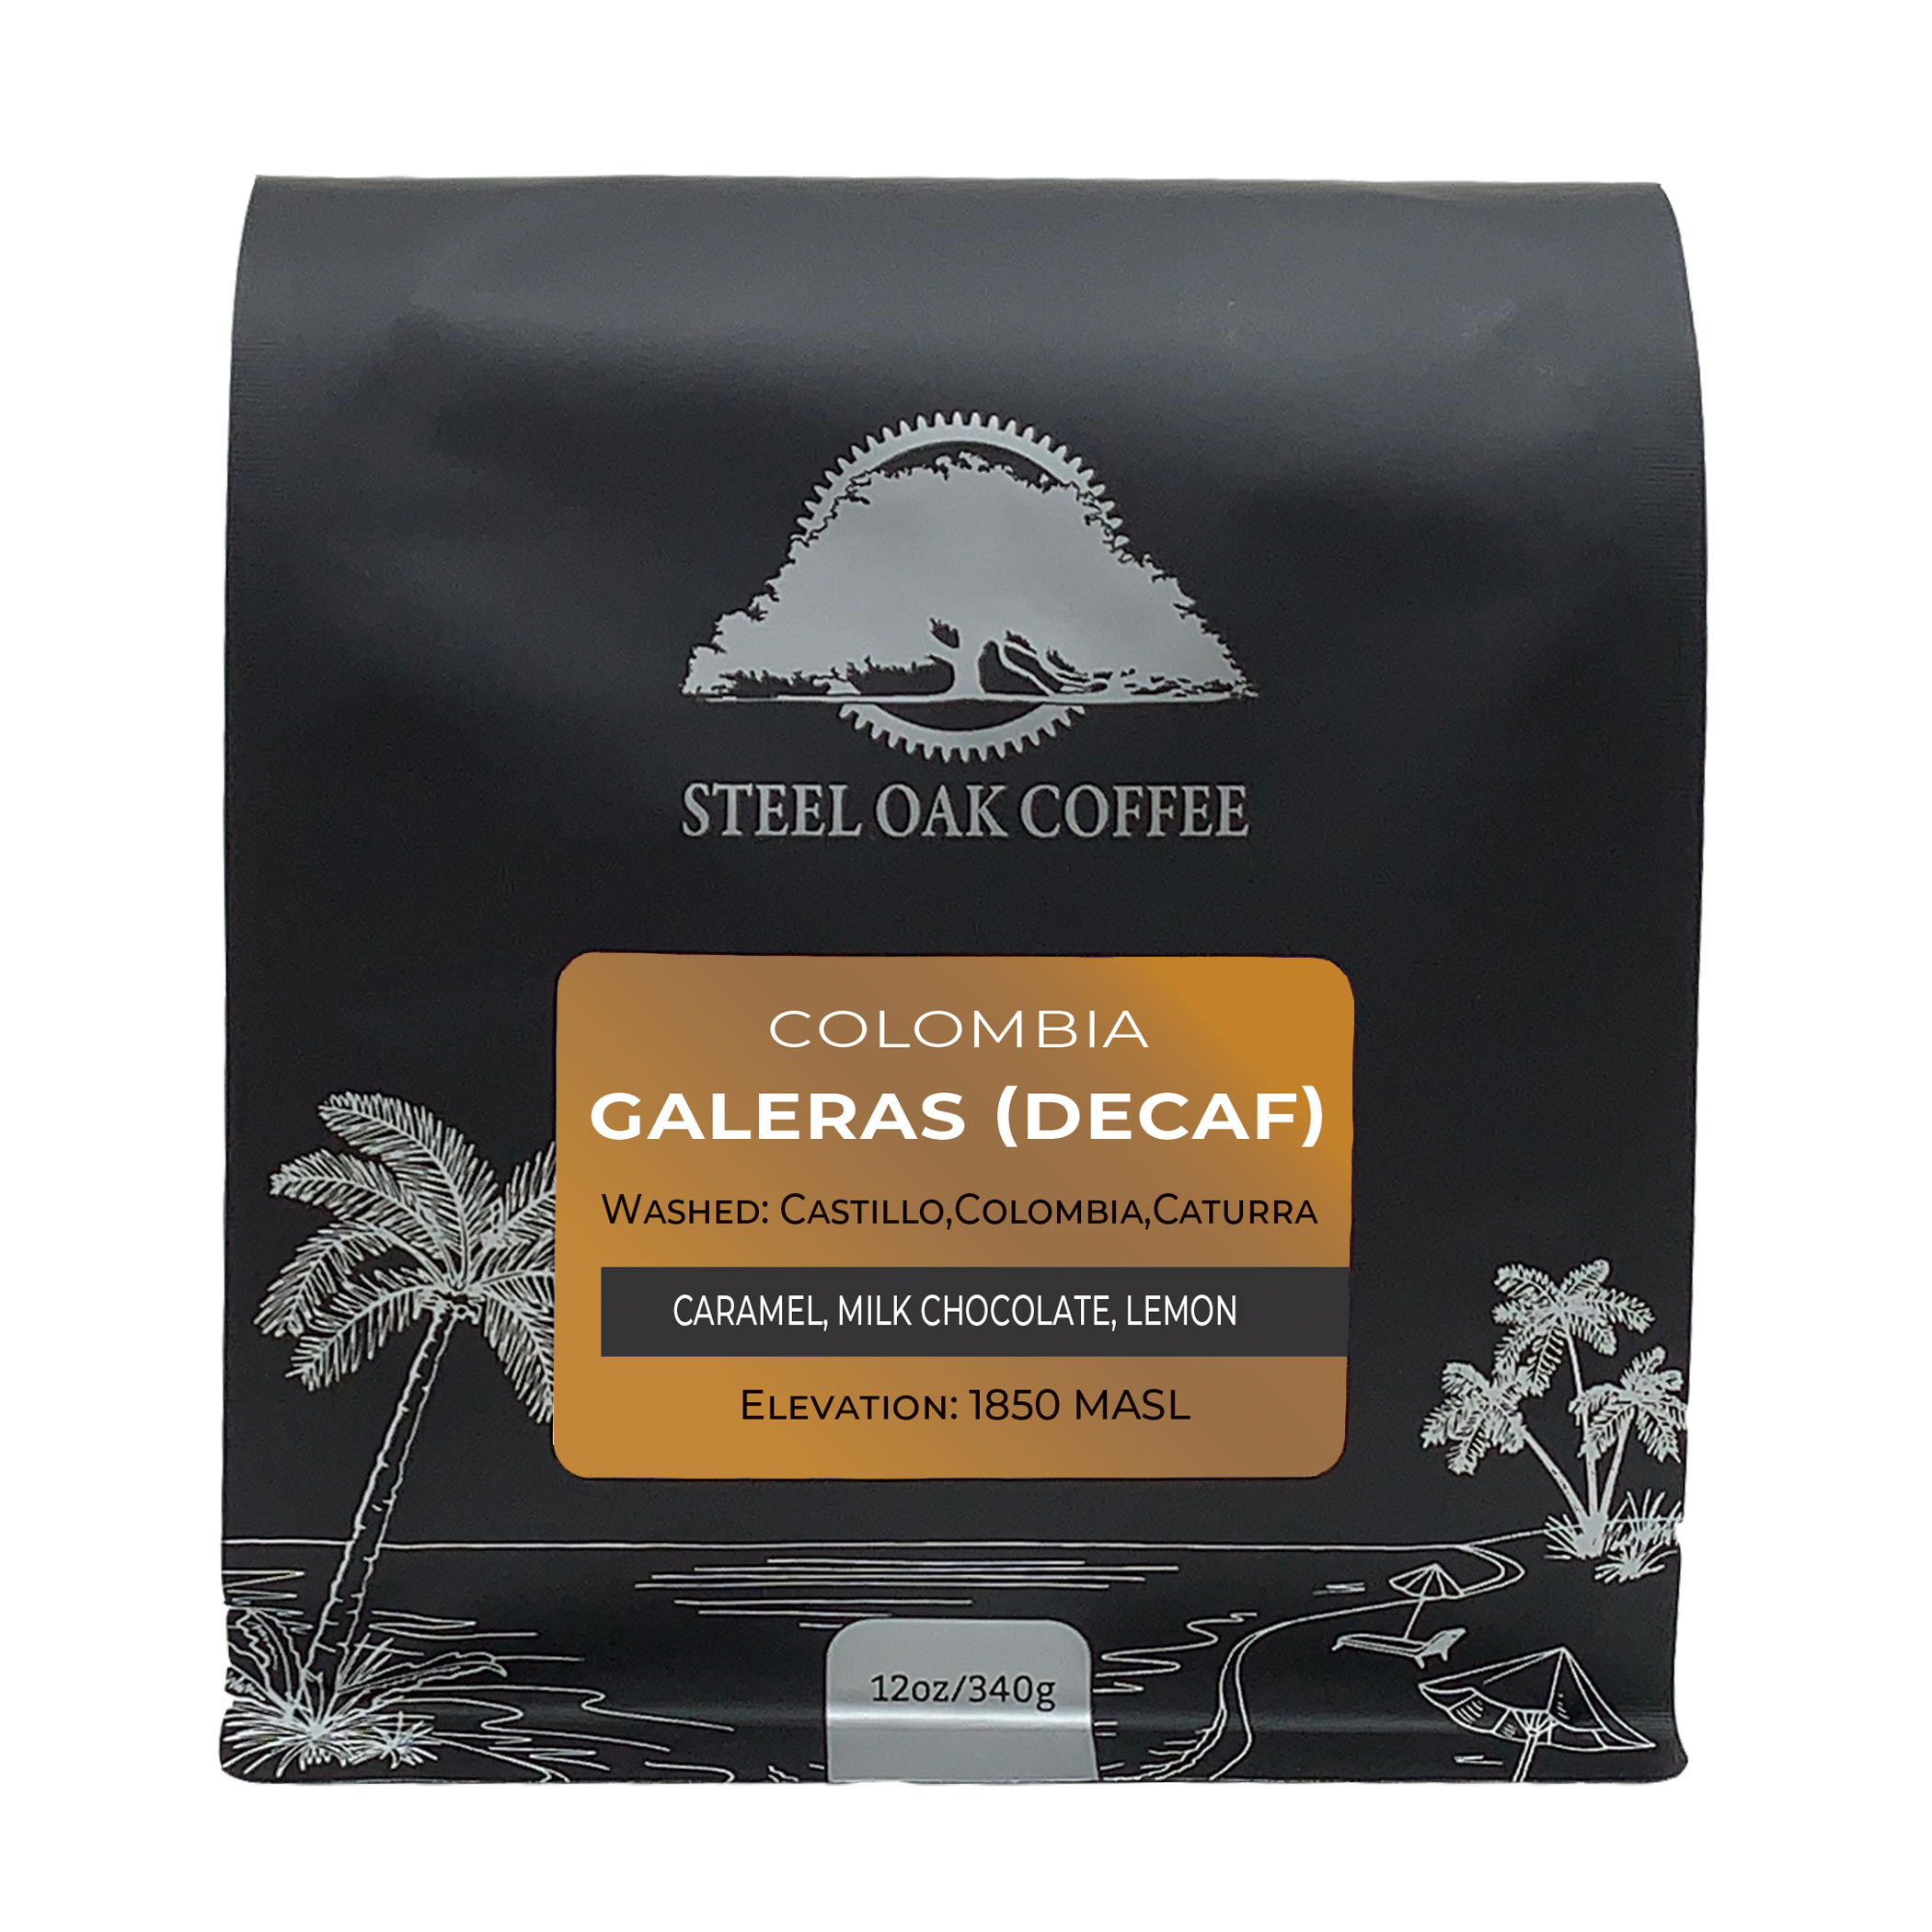 Colombia - Galeras (Decaf) - Steel Oak Coffee